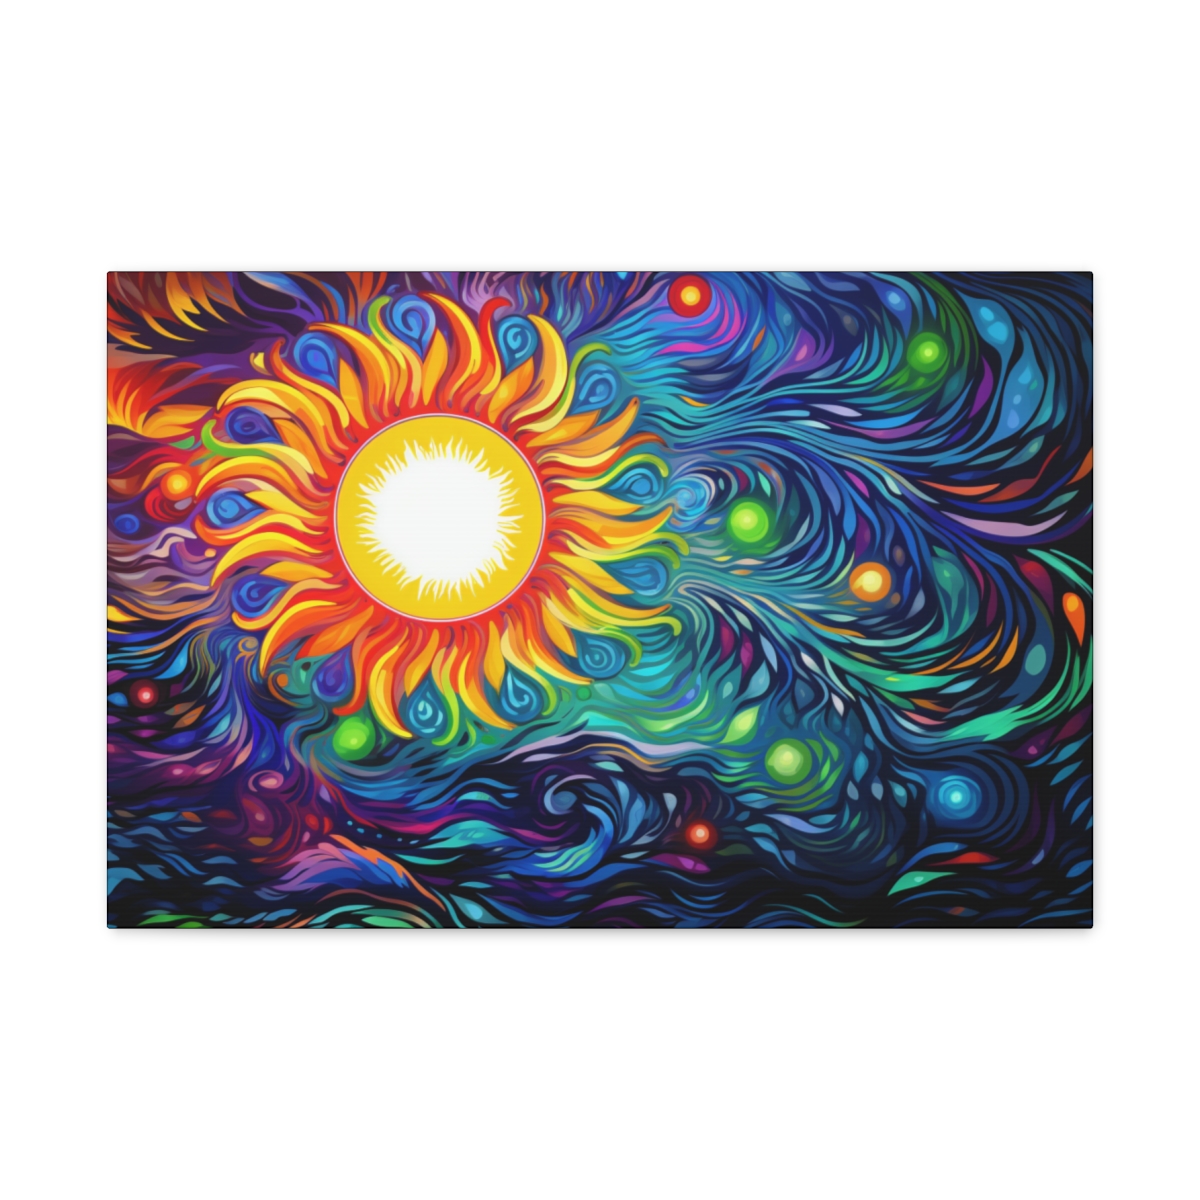 Trippy Sun Art Hippie Canvas Print: Eternal Light